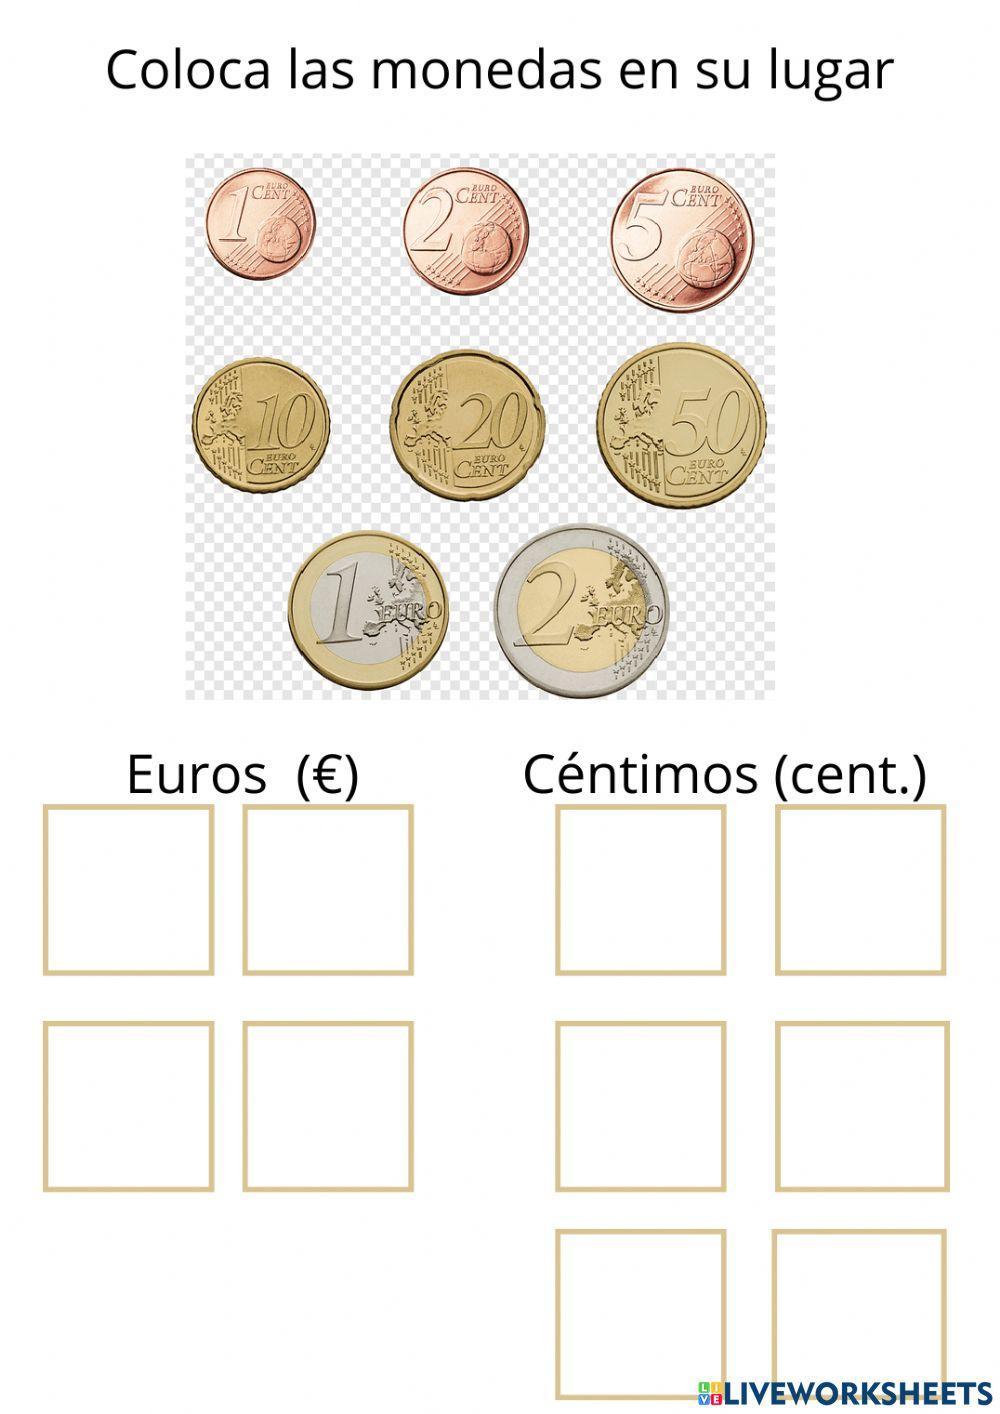 Conocemos las monedas: euros y céntimos